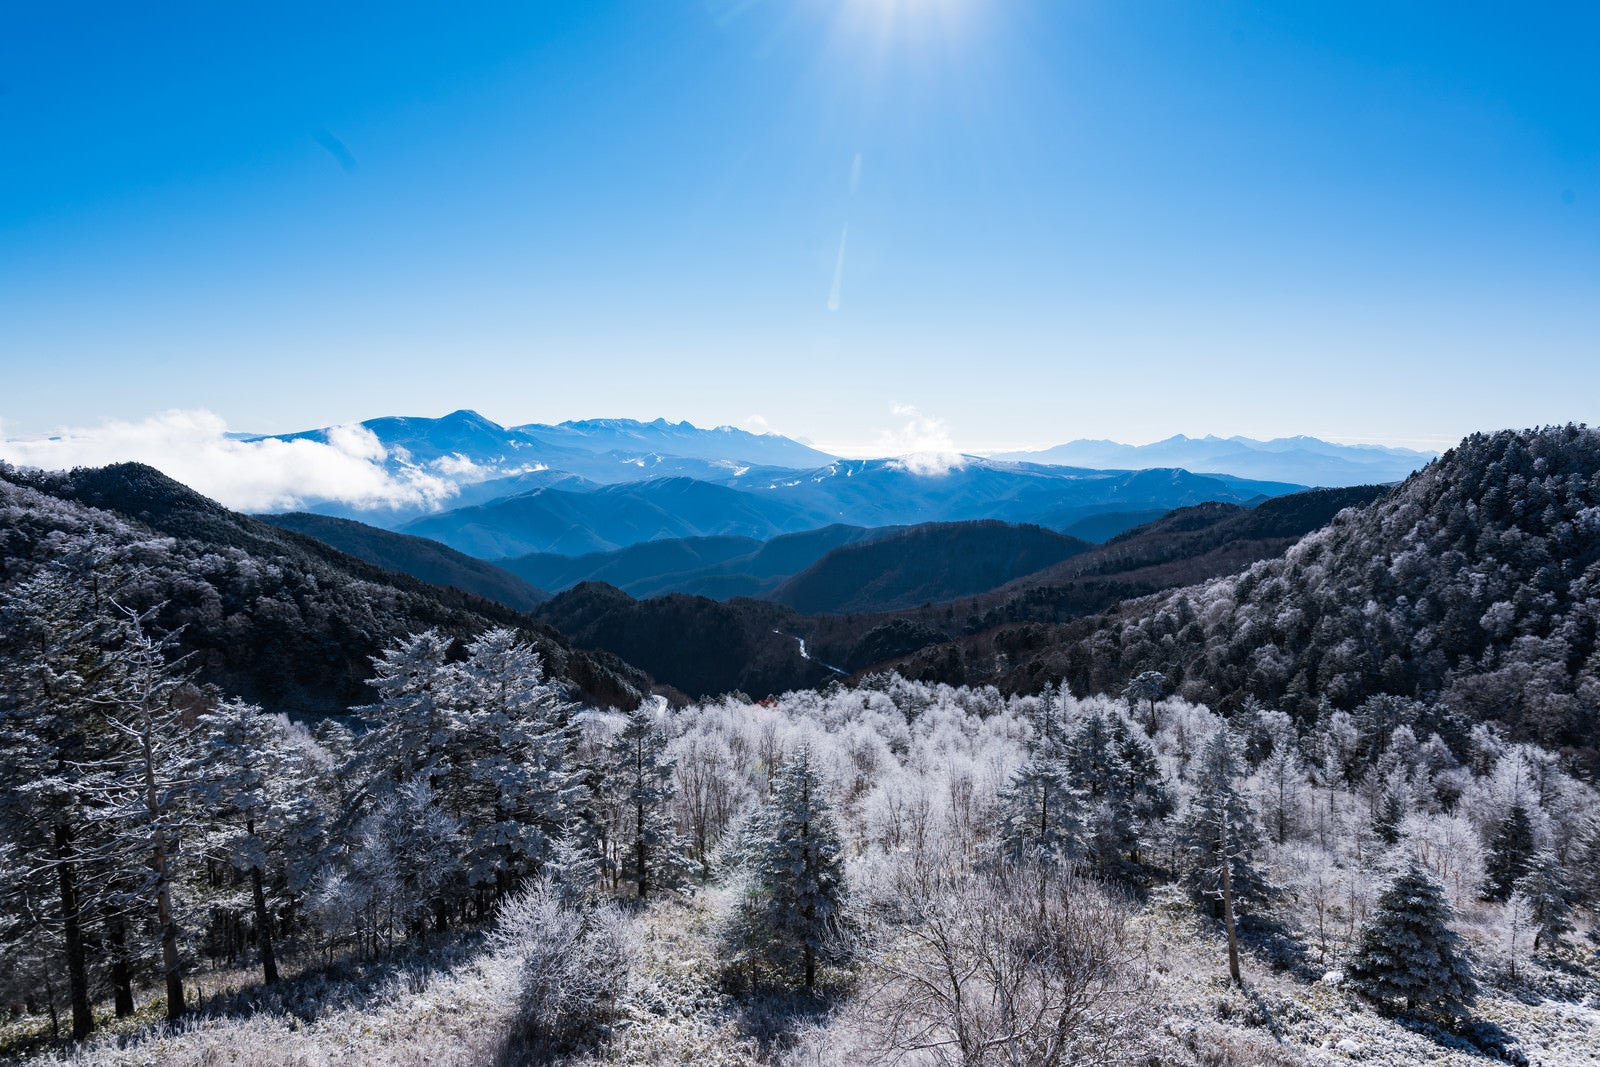 「冬の樹氷と美ヶ原の遠景」の写真